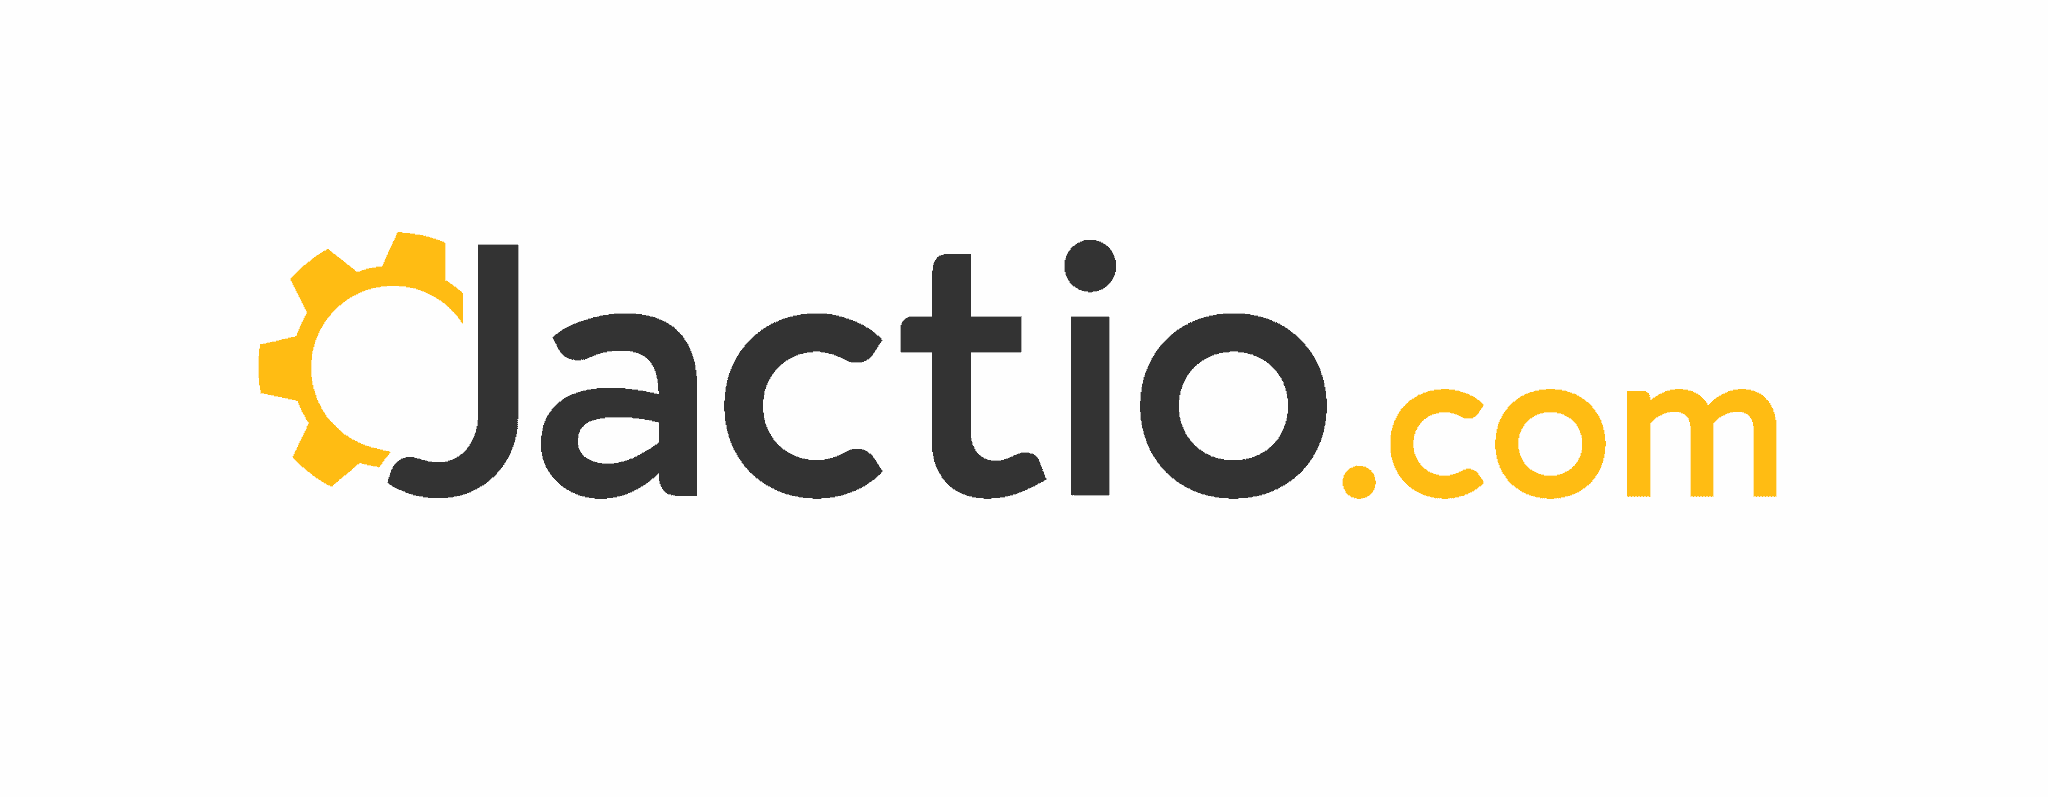 Jactio.com